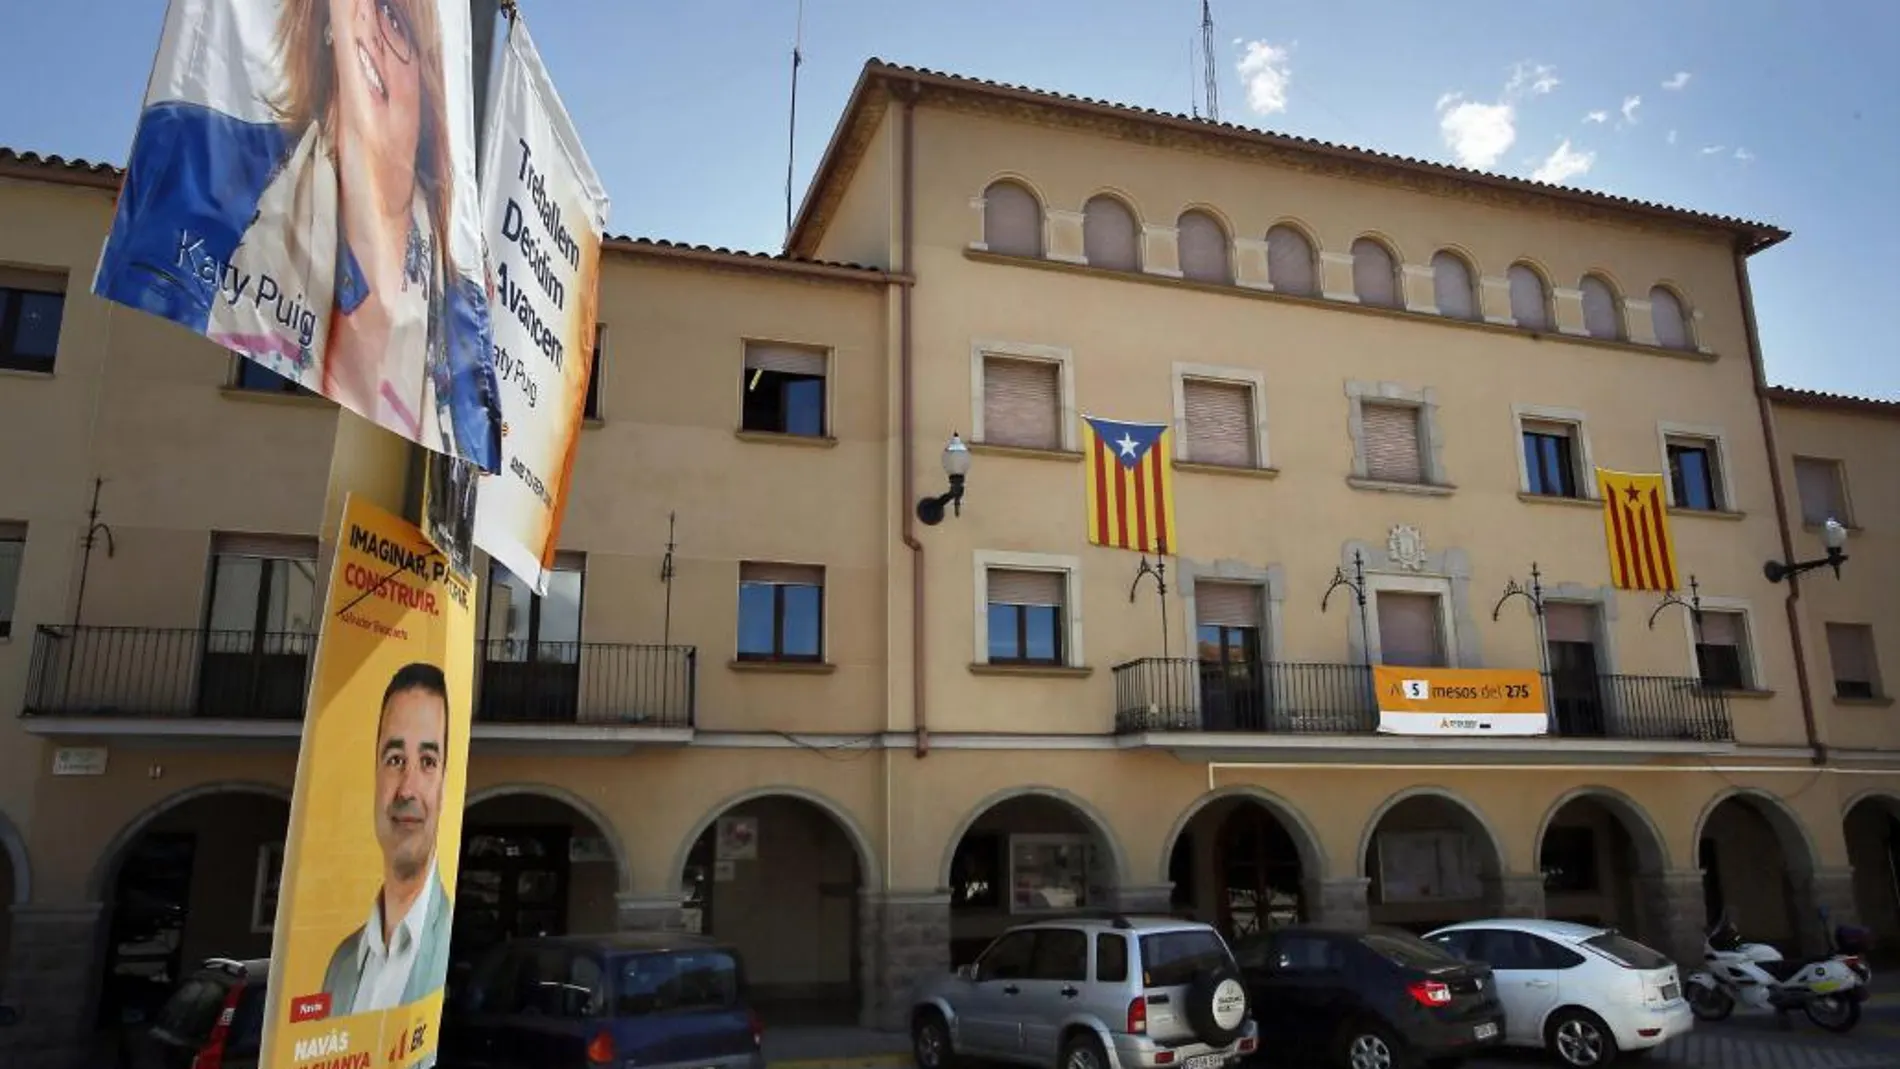 Fachada del Ayuntamiento de Manresa (Barcelona), gobernado por CIU, con la bandera estelada en el balcón.